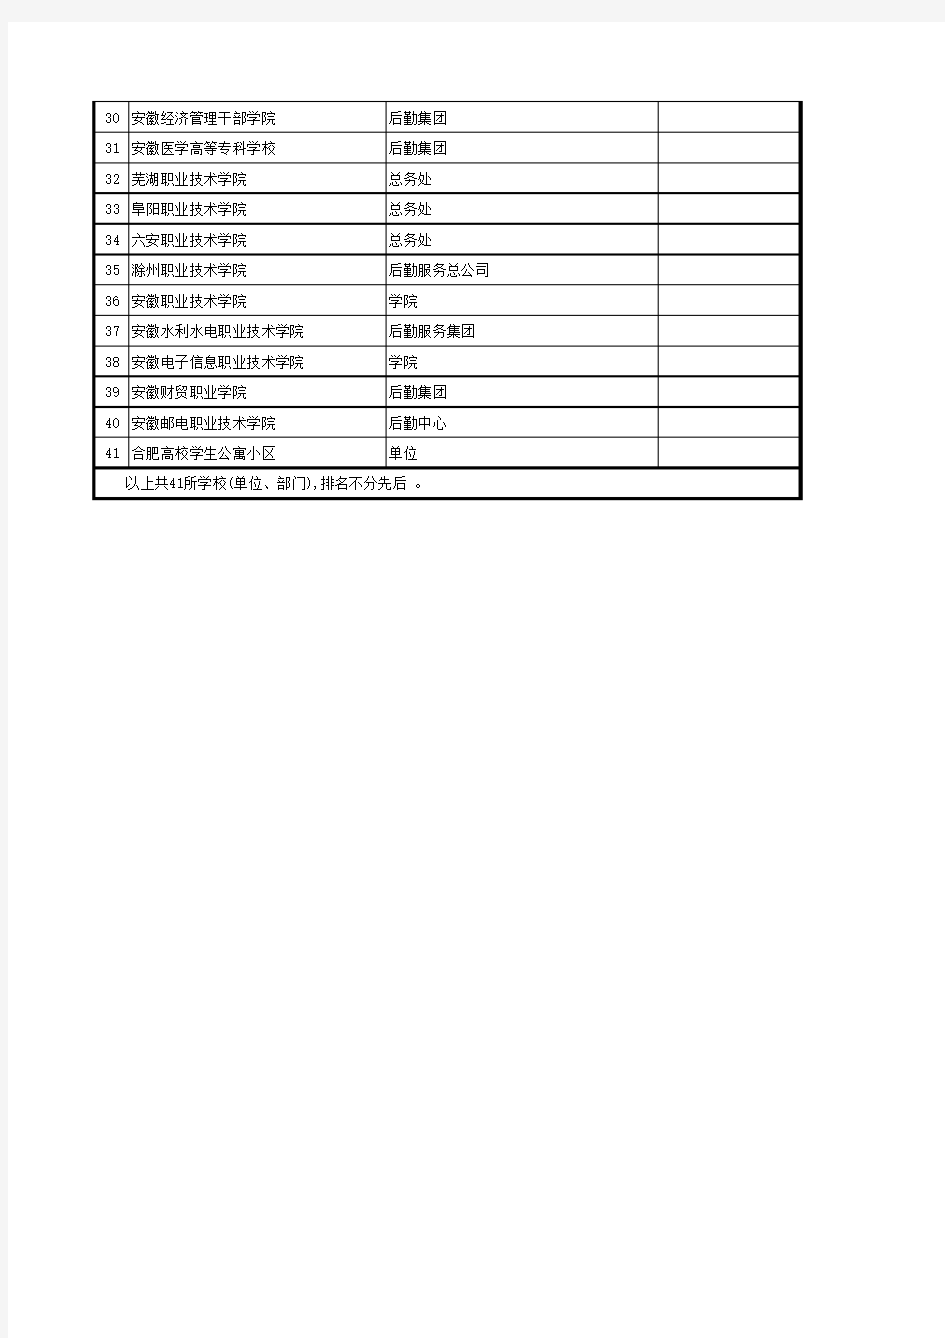 安徽省高校后勤服务企业名单